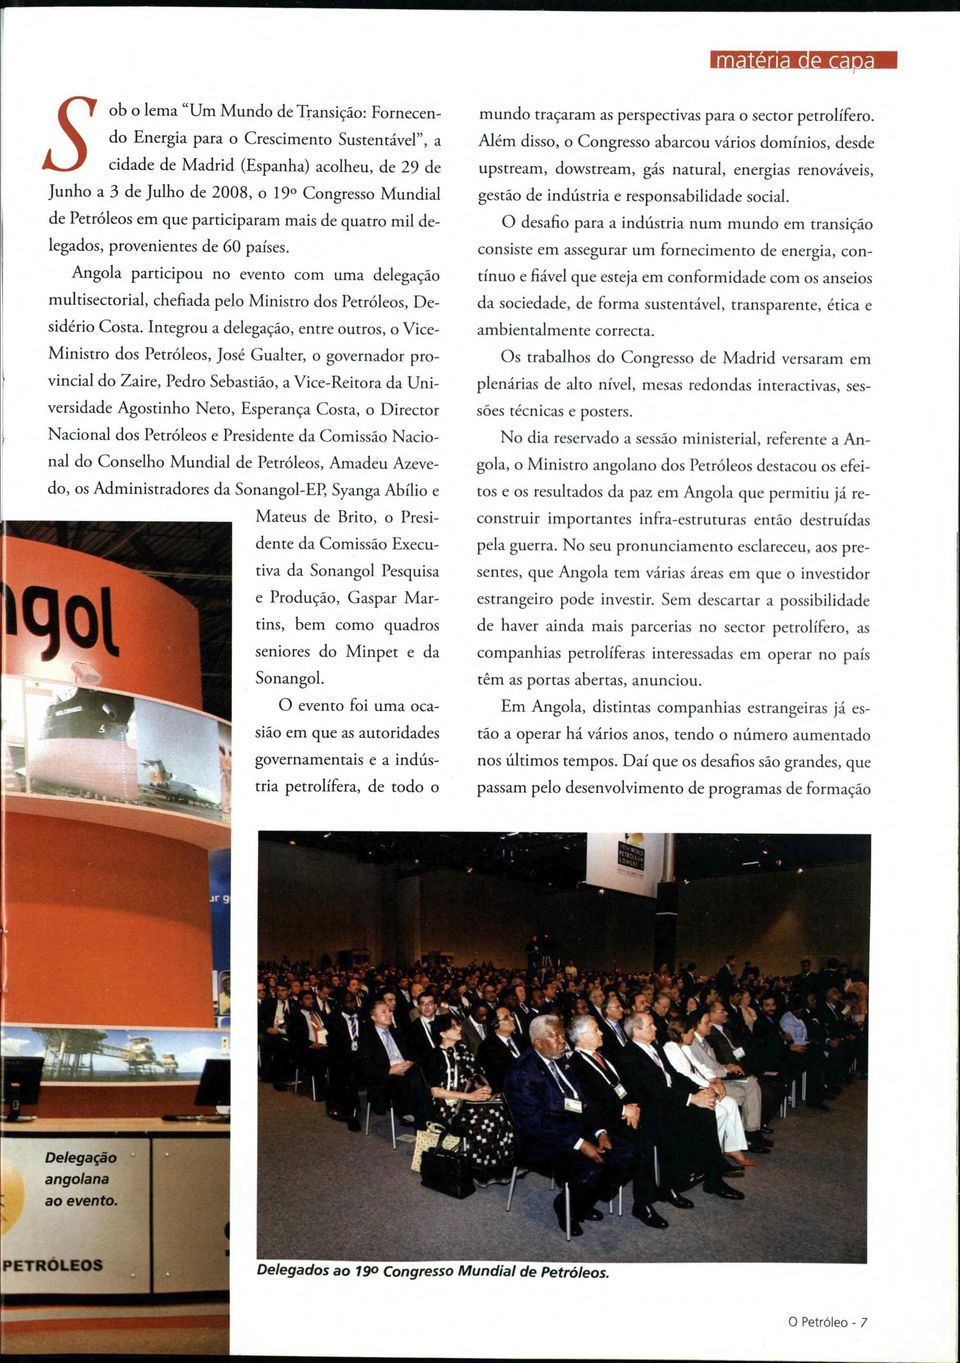 Angola participou no evento com urna delegagáo multisectorial, chefiada pelo Ministro dos Petróleos, Desidério Costa.